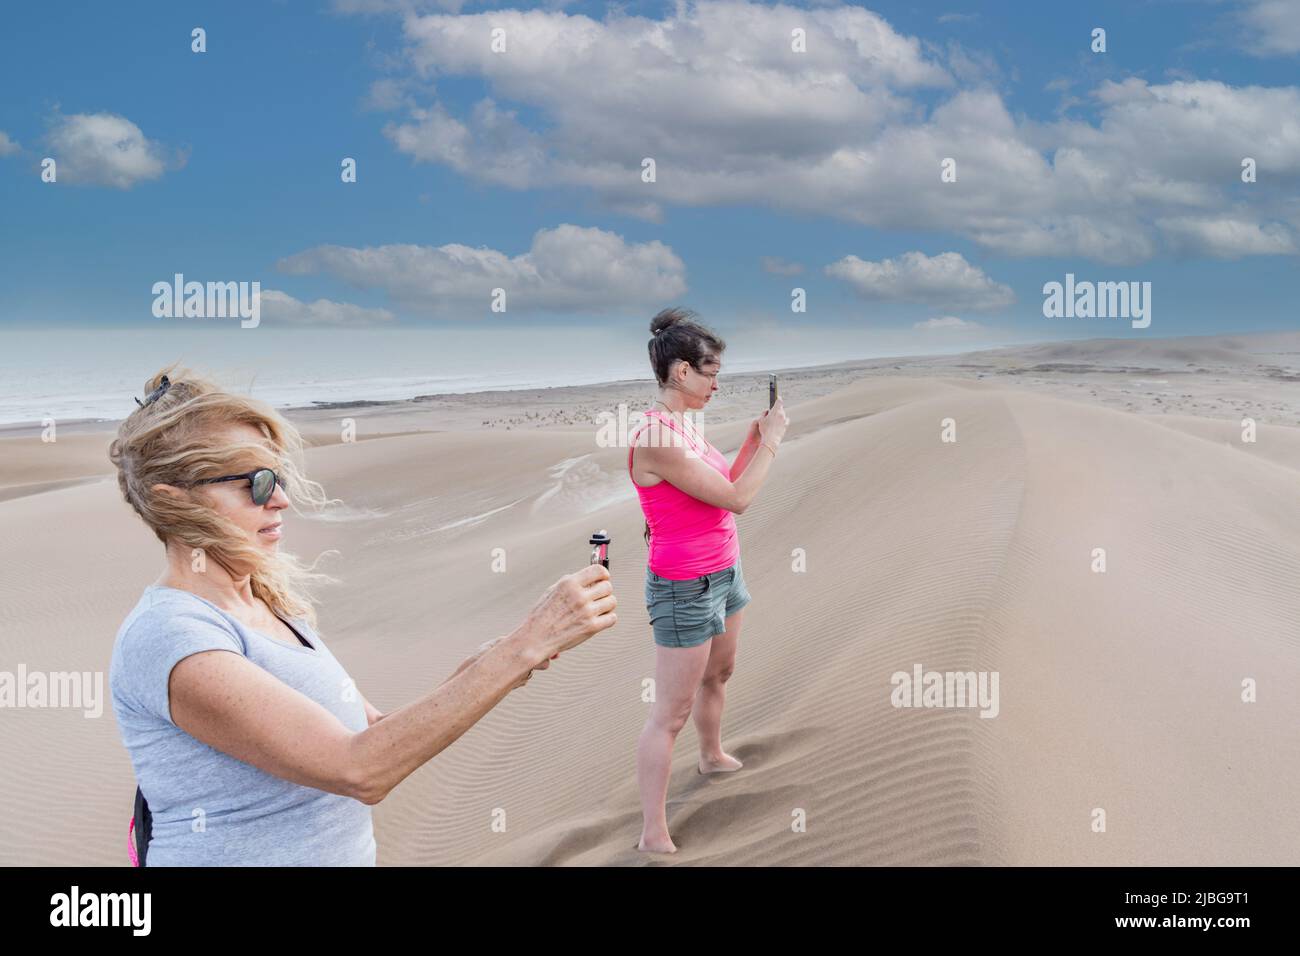 Vue latérale de la mère mature et de la fille adulte prenant des photos sur une grande dune avec la mer et la plage derrière Banque D'Images